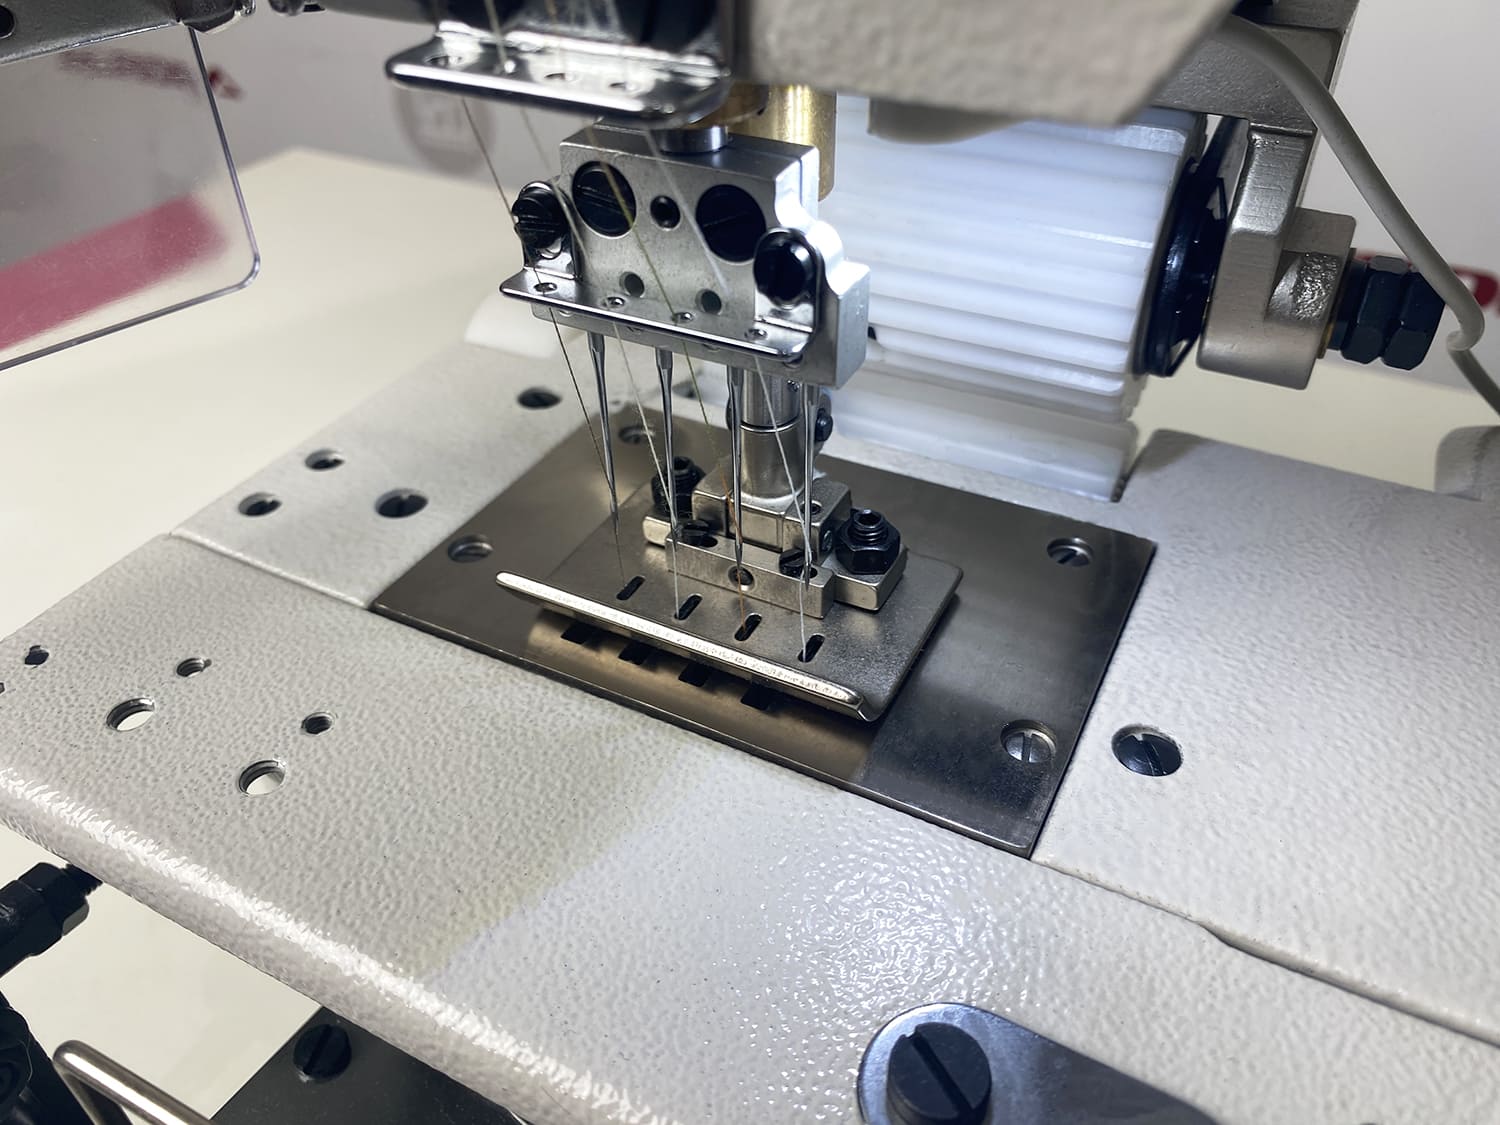 Многоигольная промышленная швейная машина (поясная машина) Aurora A-04095P-VWL-D (прямой привод)